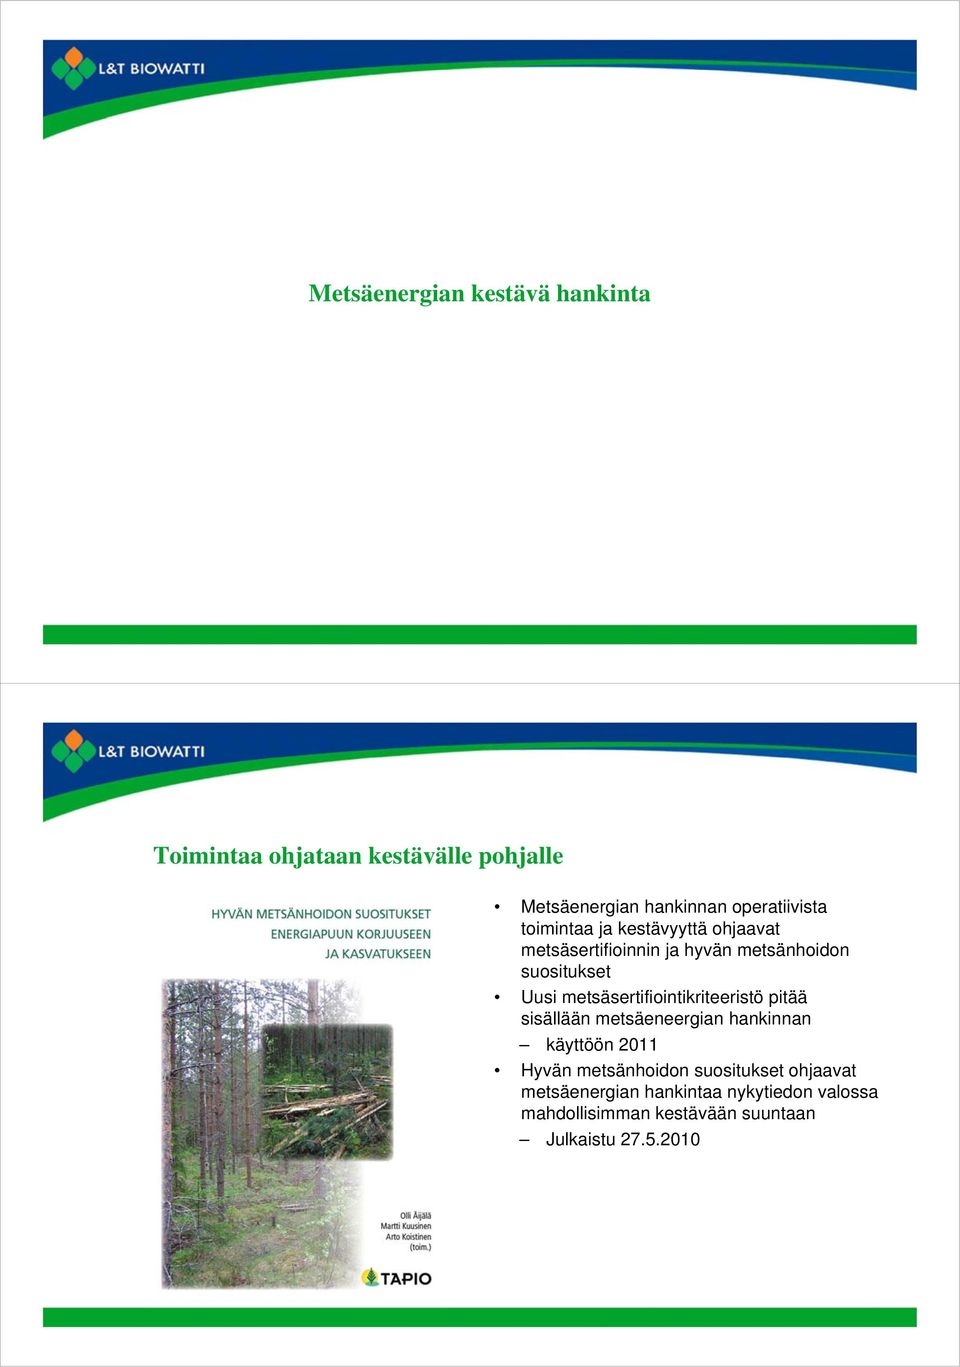 Uusi metsäsertifiointikriteeristö pitää sisällään metsäeneergian hankinnan käyttöön 2011 Hyvän